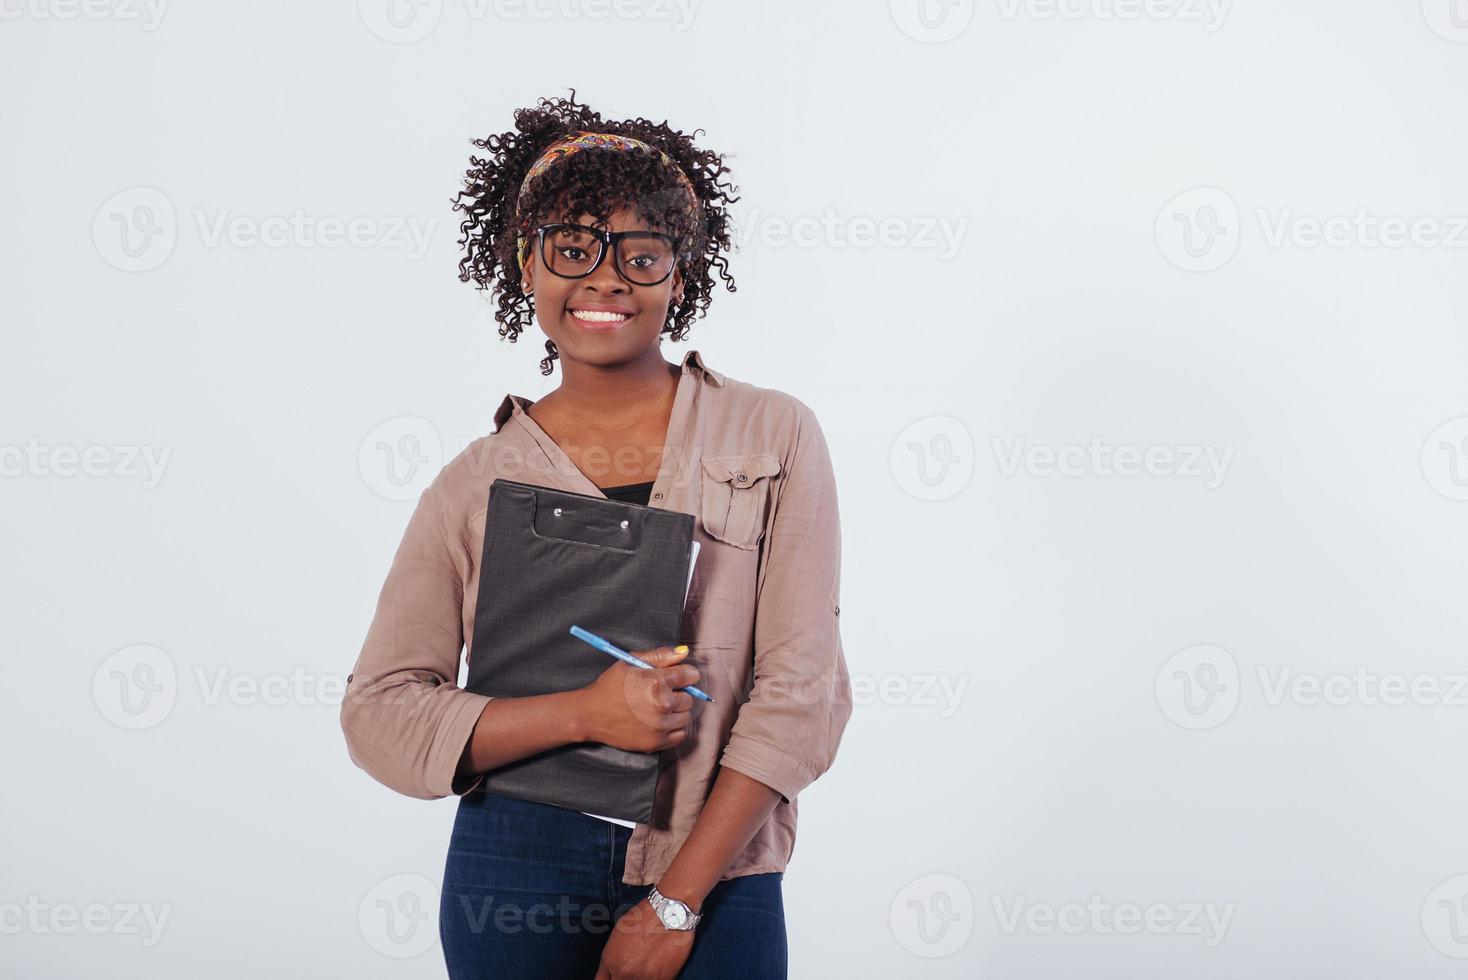 concepción de la educación. hermosa chica afroamericana con cabello rizado en el estudio con fondo blanco foto